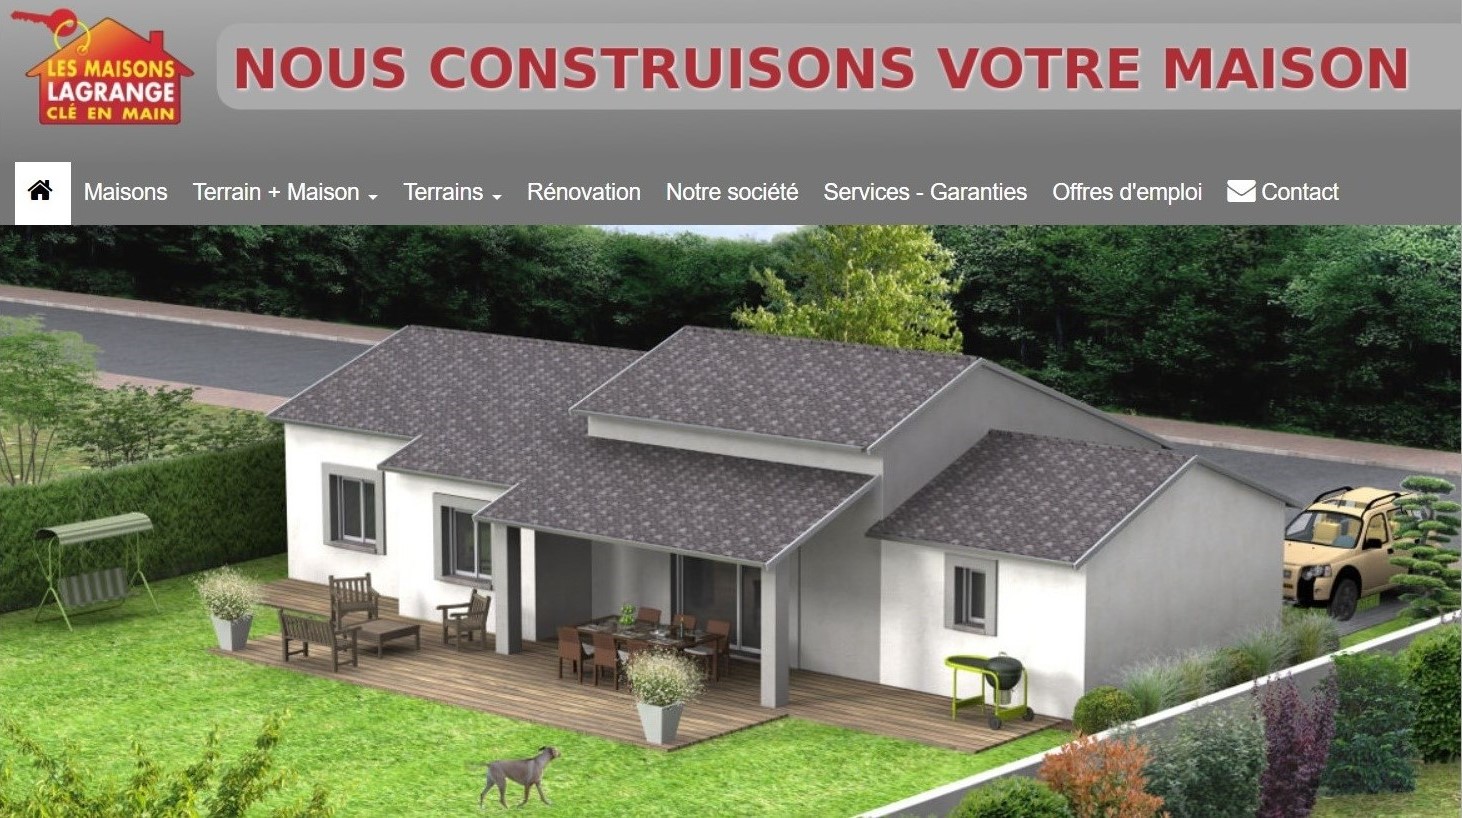  Maisons Lagrange - Constructeur Maisons à Foix